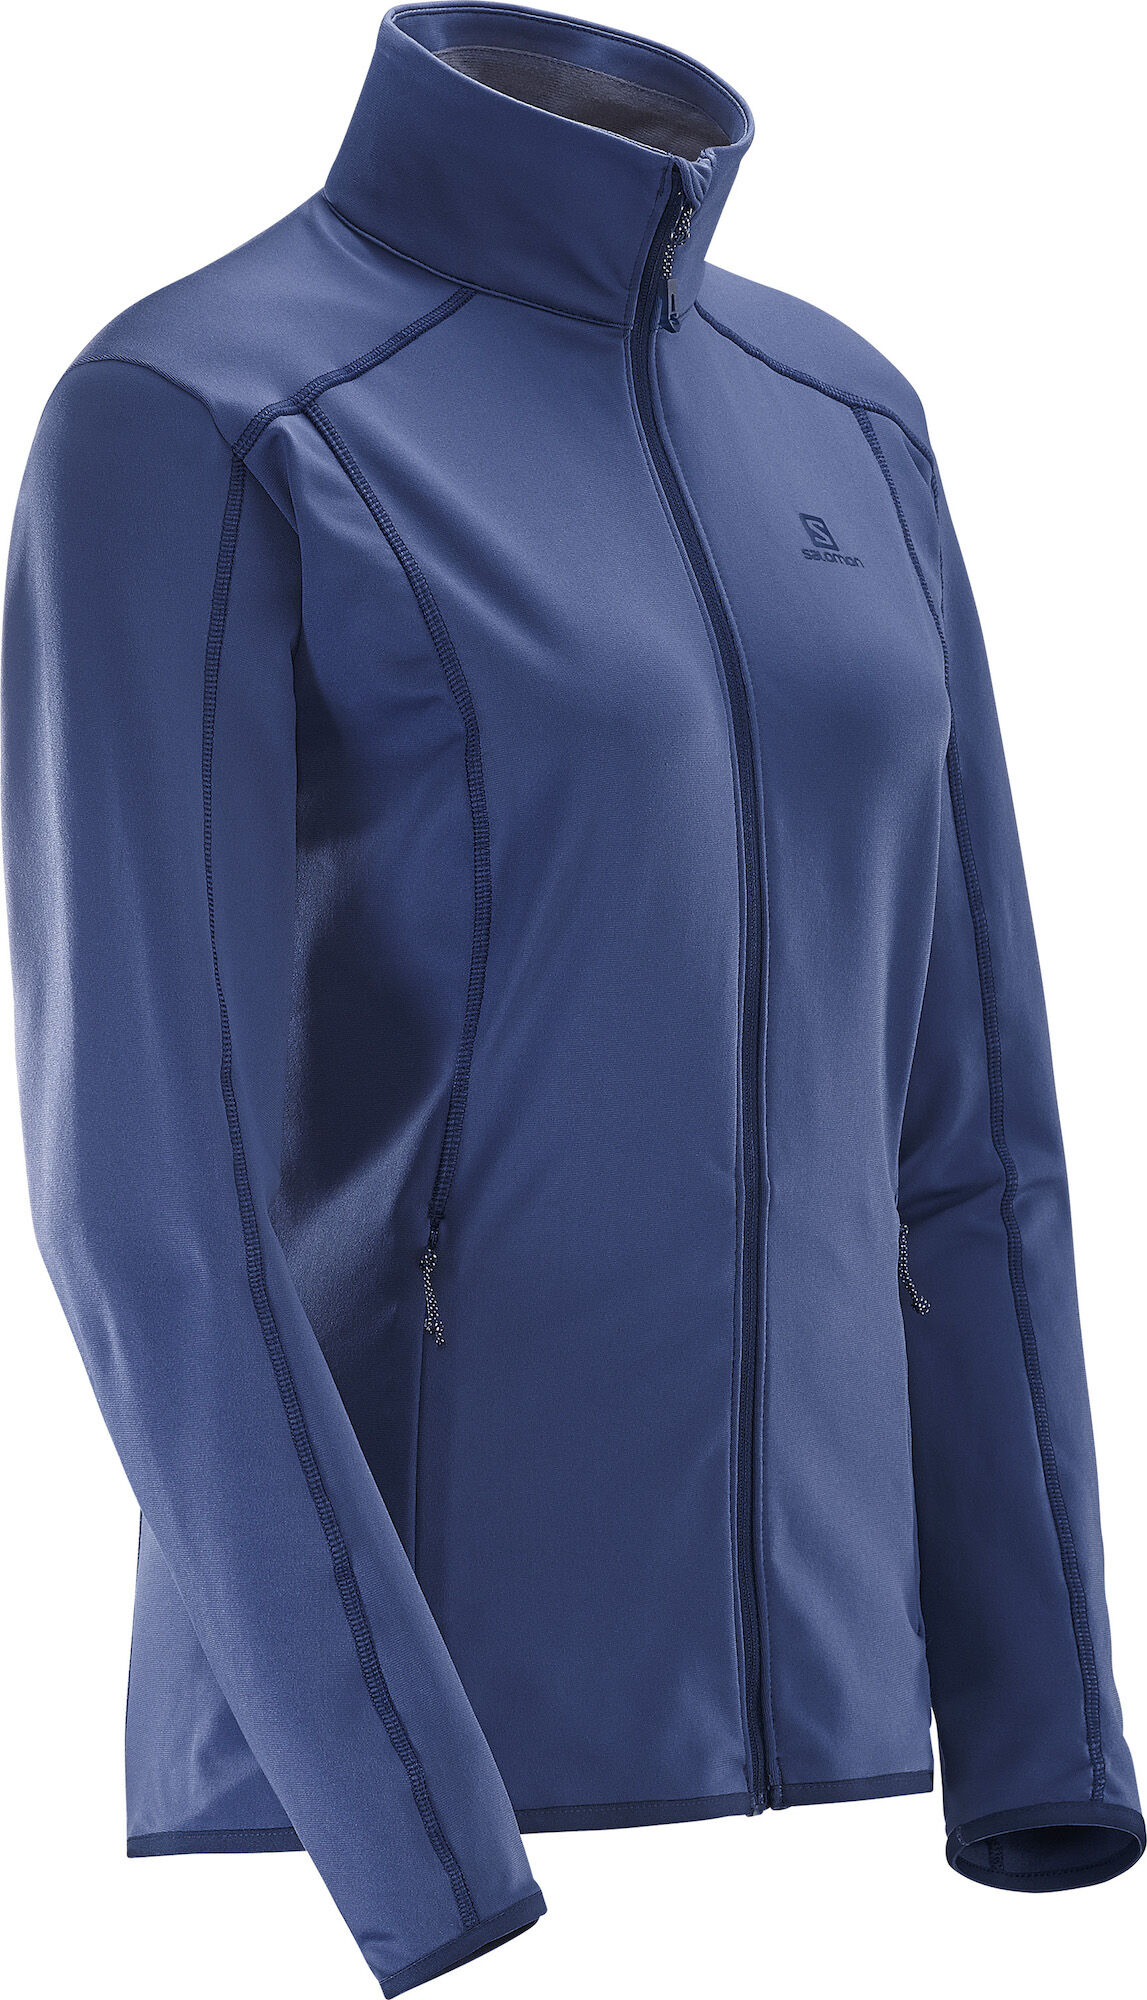 Salomon - Discovery FZ W - Fleece jacket - Women's